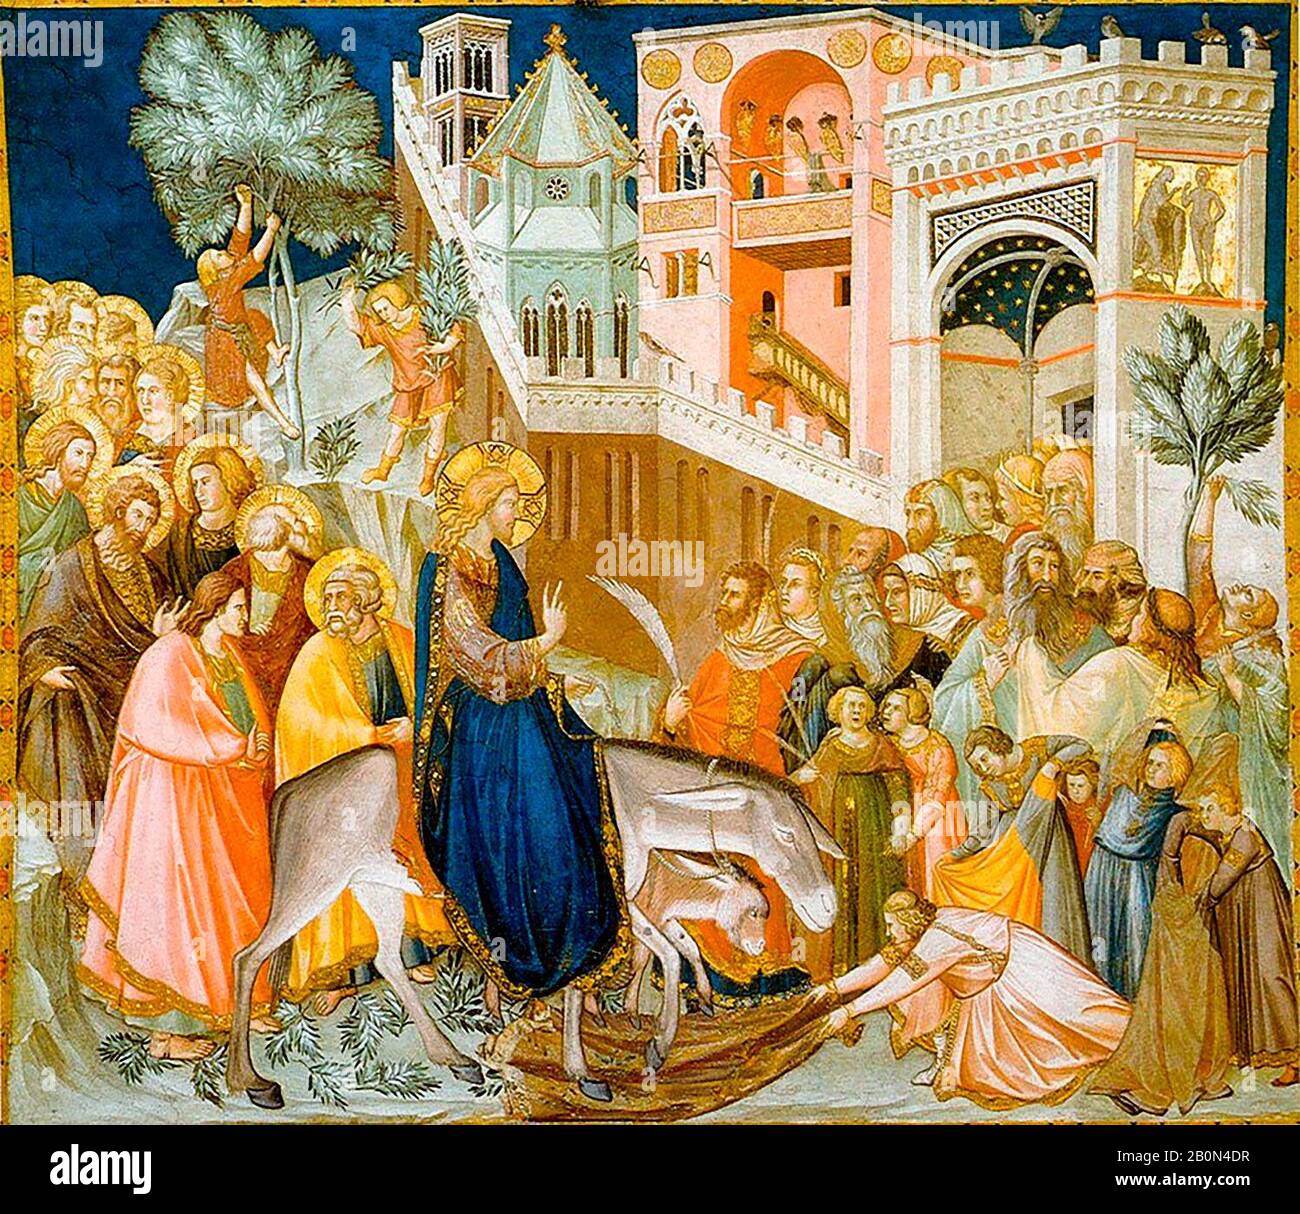 Jésus-Christ entrant à Jérusalem - Pietro Lorenzetti, vers 1320 Banque D'Images